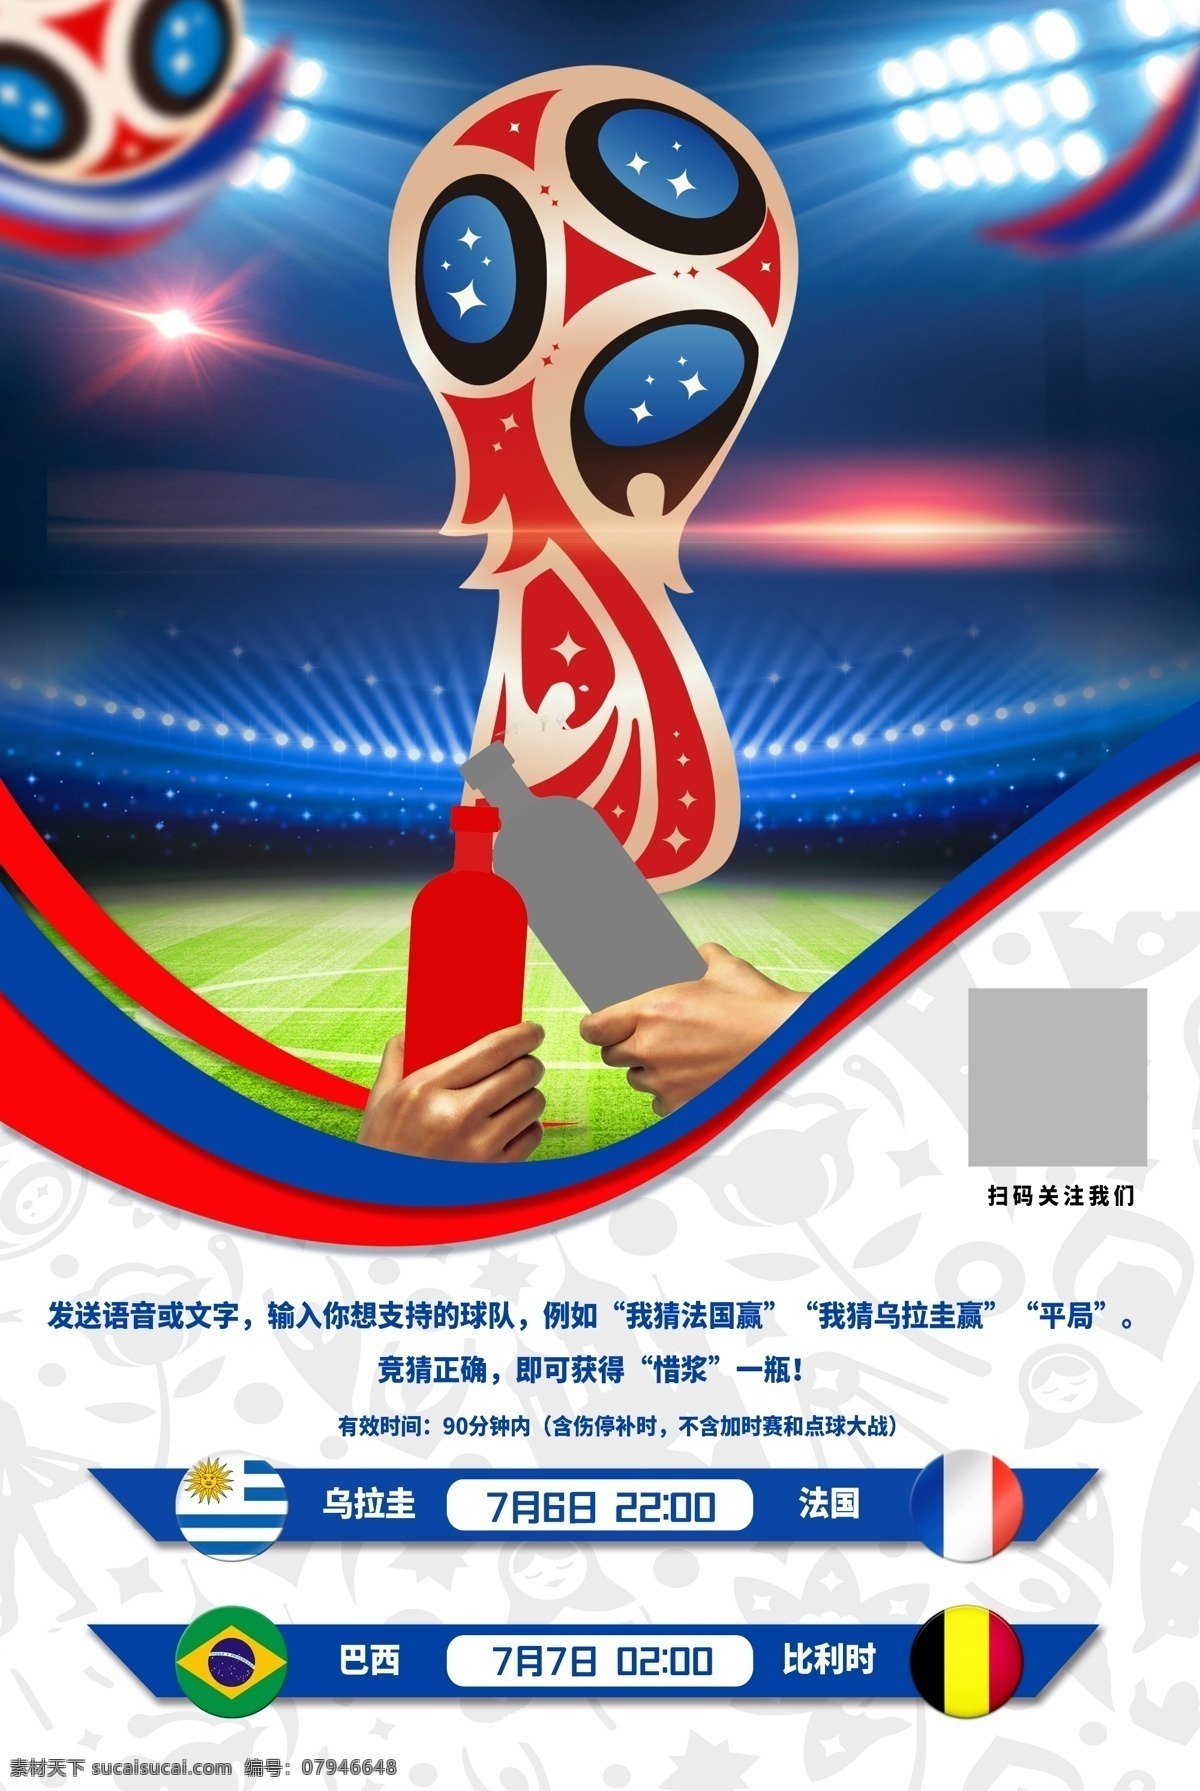 欢庆 2018 世界杯 活动 海报 比赛 足球 庆祝 绿茵场 举杯